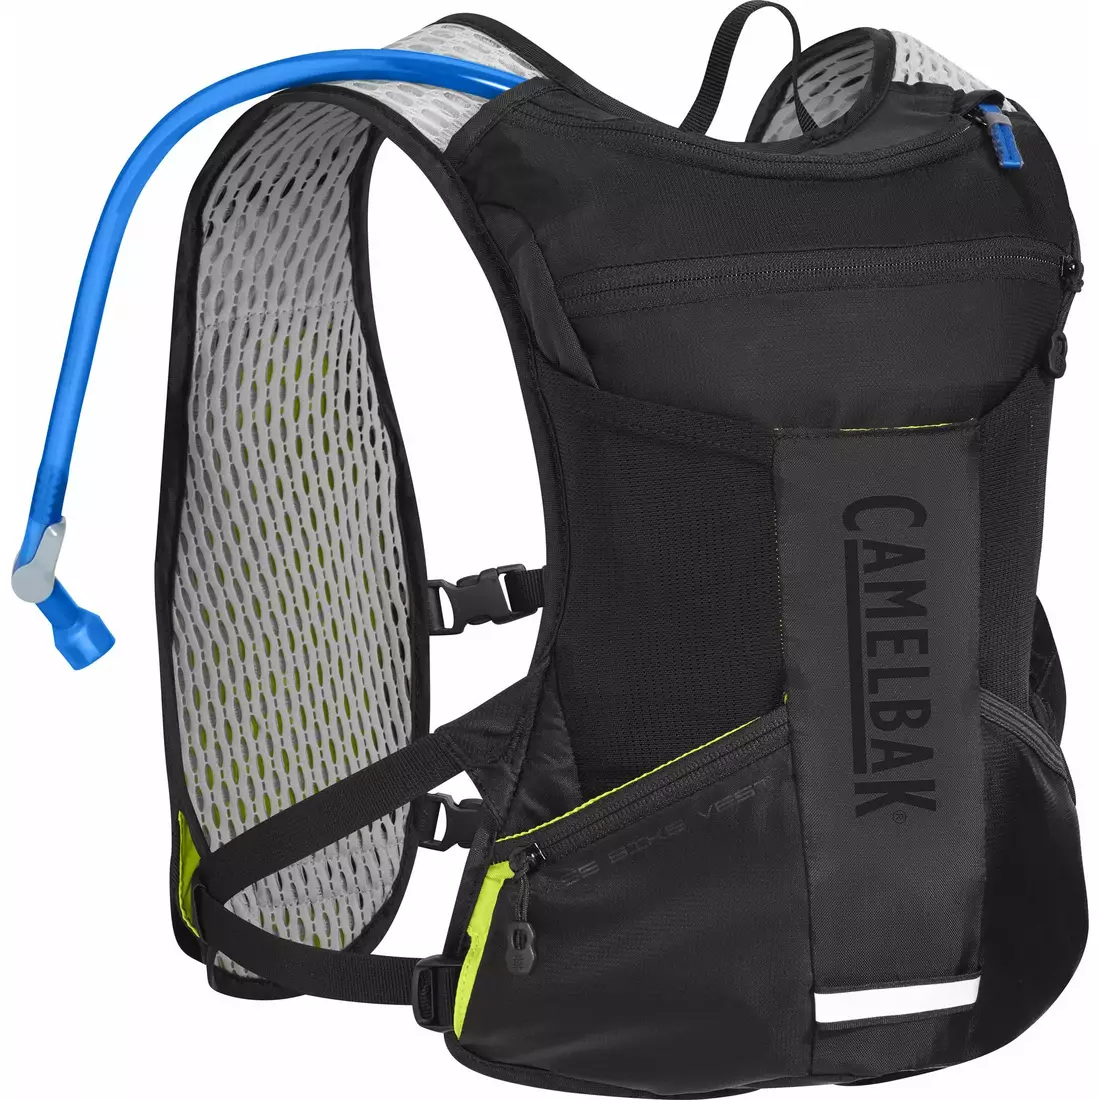 CAMLBAK Chase Bike Vest batoh/bežecká vesta s vodným vakom 1,5L čierna